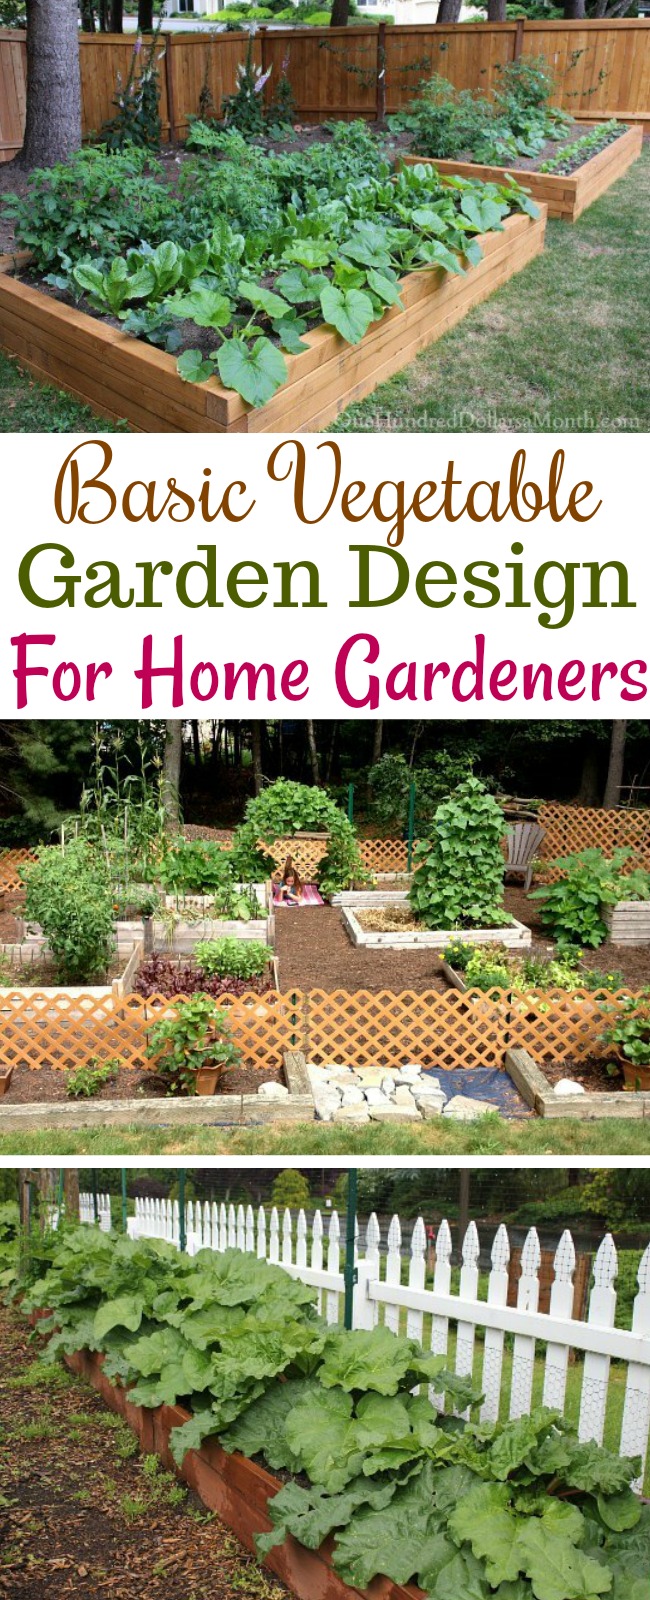 Tips on Basic Garden Design